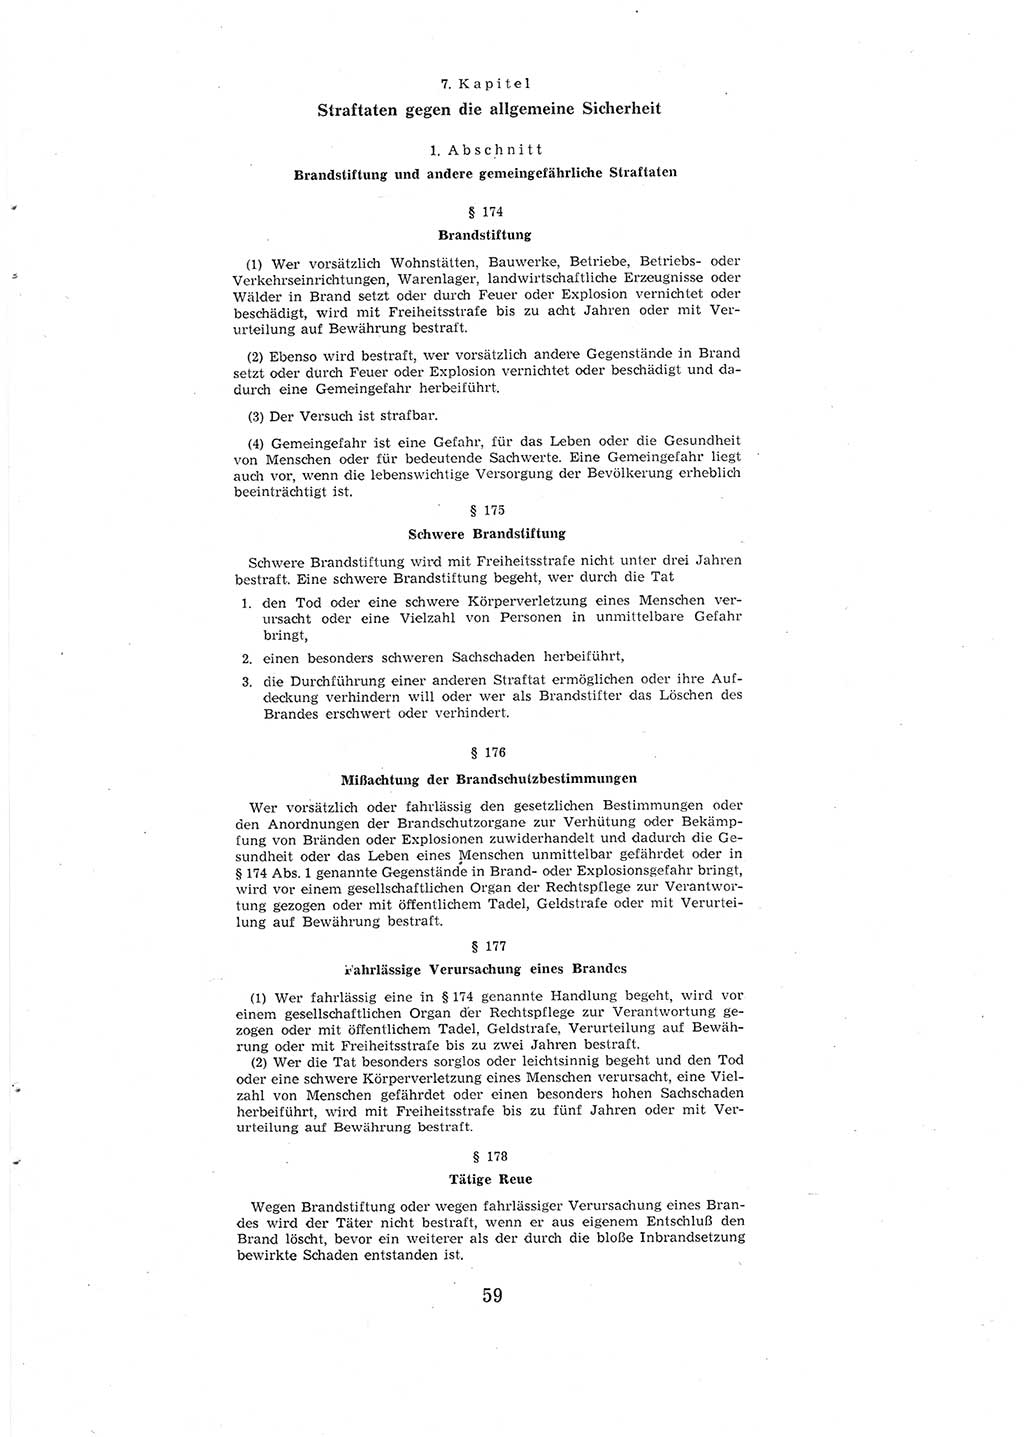 Entwurf des Strafgesetzbuches (StGB) der Deutschen Demokratischen Republik (DDR) 1967, Seite 59 (Entw. StGB DDR 1967, S. 59)